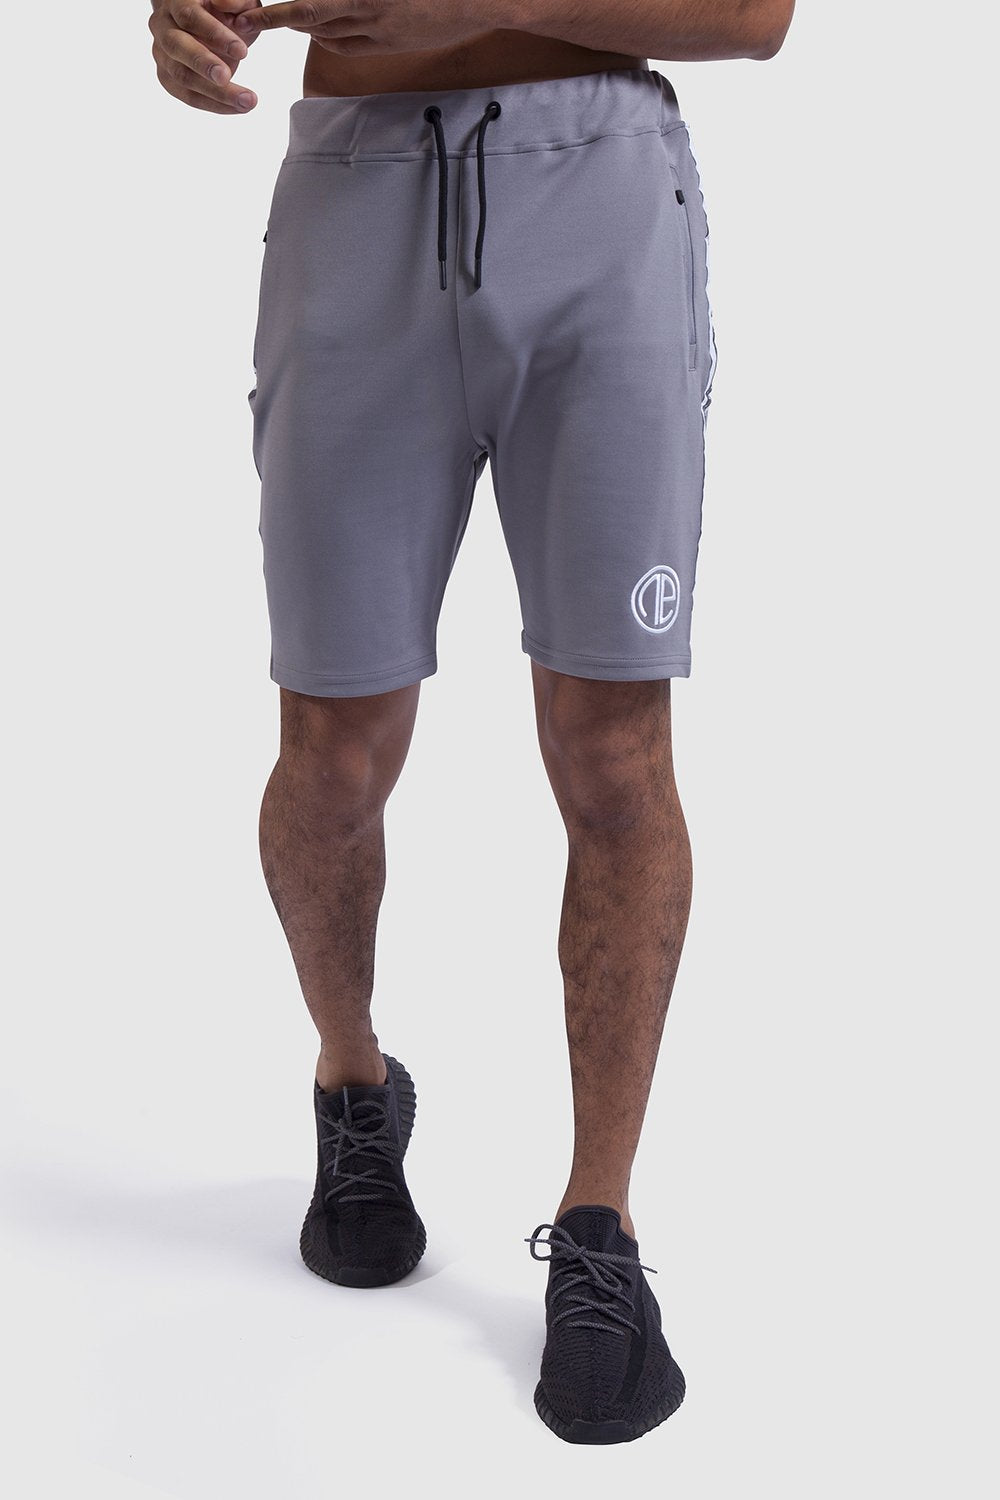 grey/white mens gym shorts - Firestone